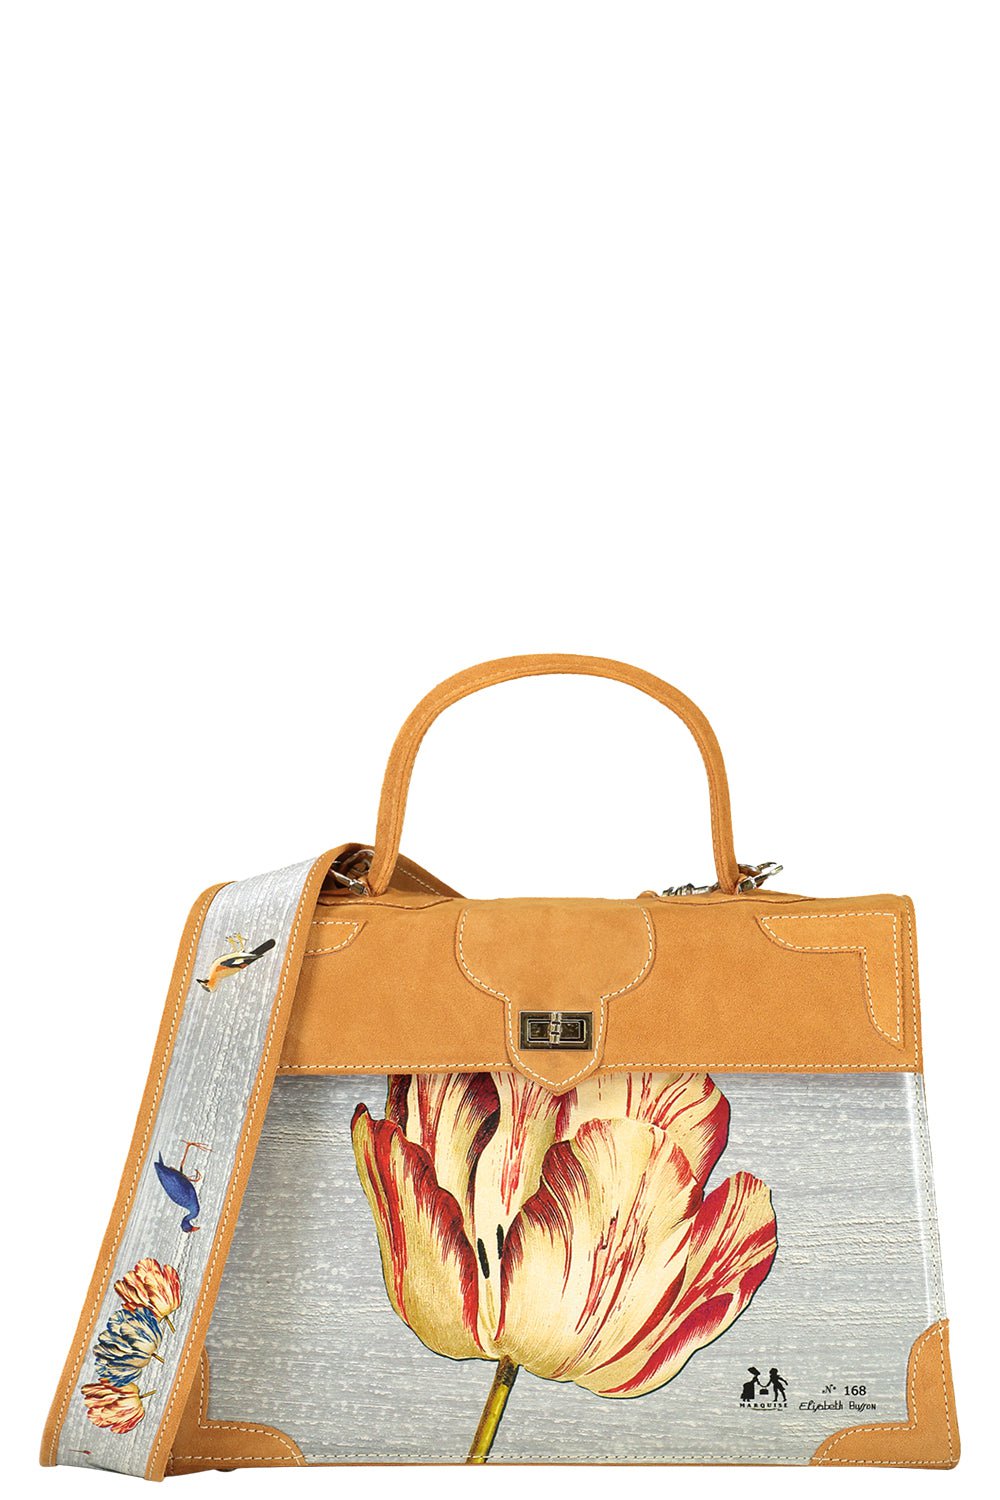 MARQUISE PARIS-Tulipe Top Handle Bag-GOLD